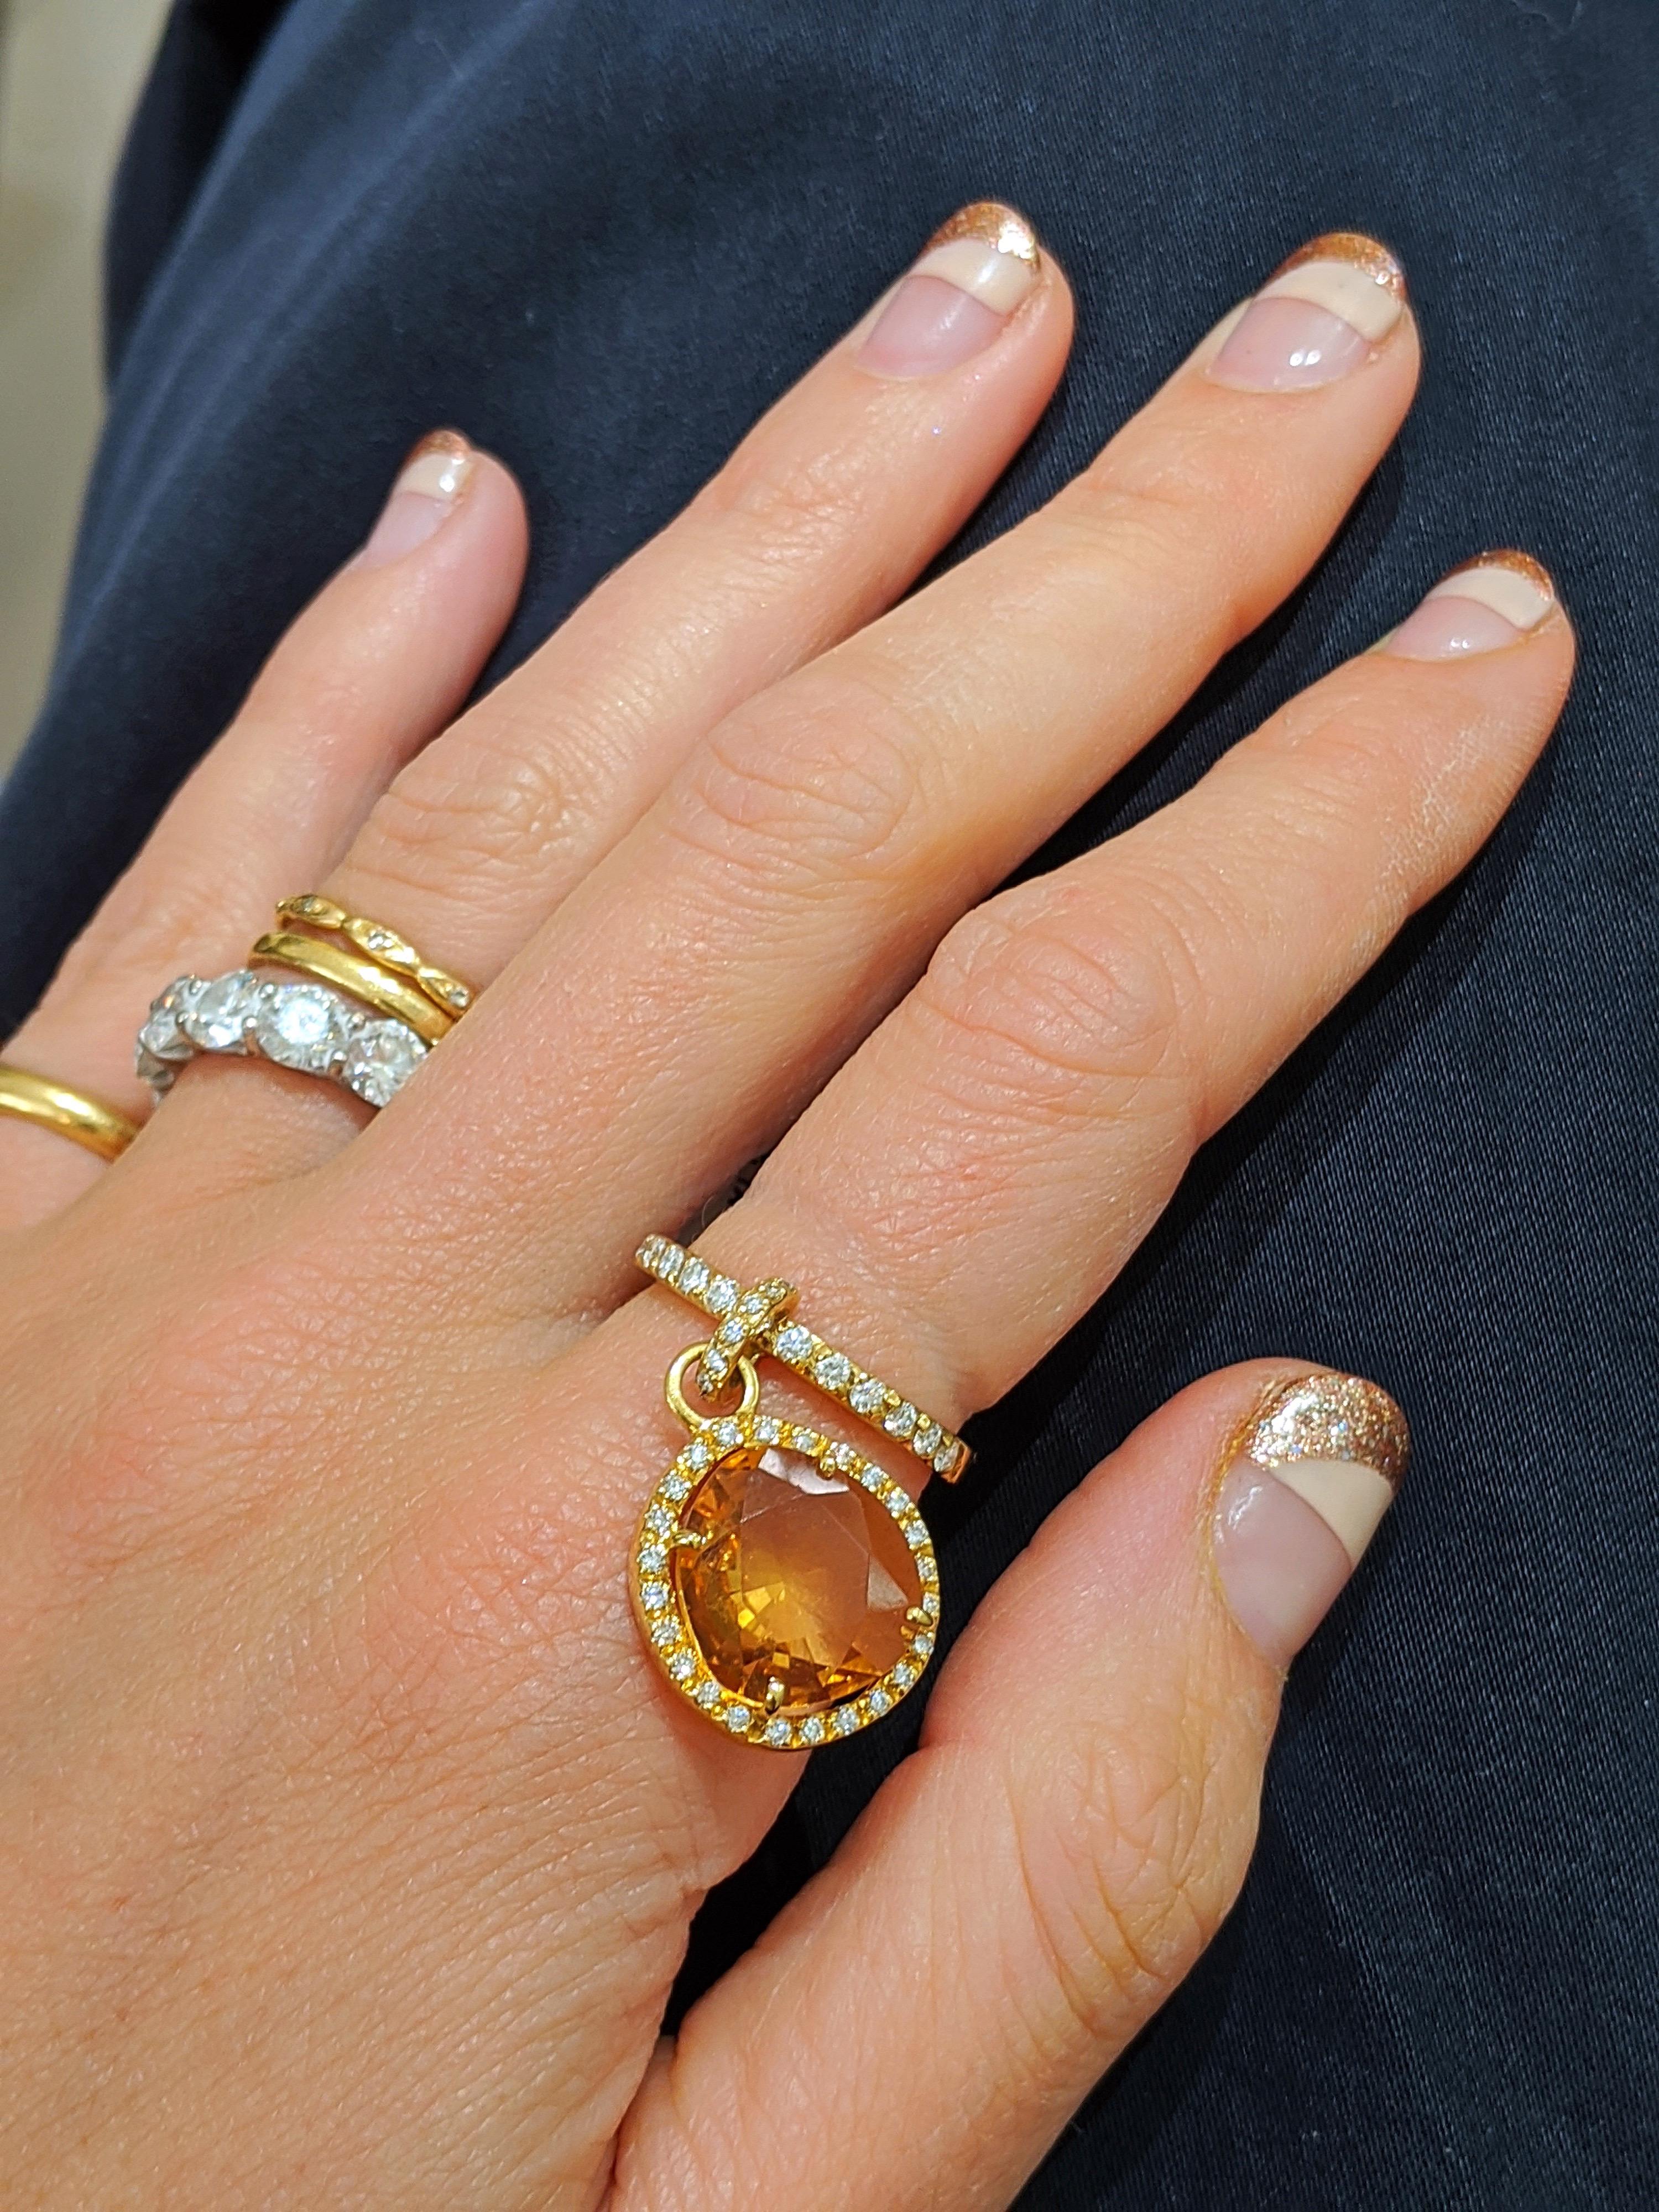 Cellini exklusiv. Hergestellt in Italien. Dieser verspielte Ring aus 18 Karat Gelbgold hat einen 0,90 Karat schweren Citrin, der in einer Diamantfassung gefasst ist. Der Citrin baumelt an einem Diamantballen, der fest auf dem Ring sitzt. Das Band